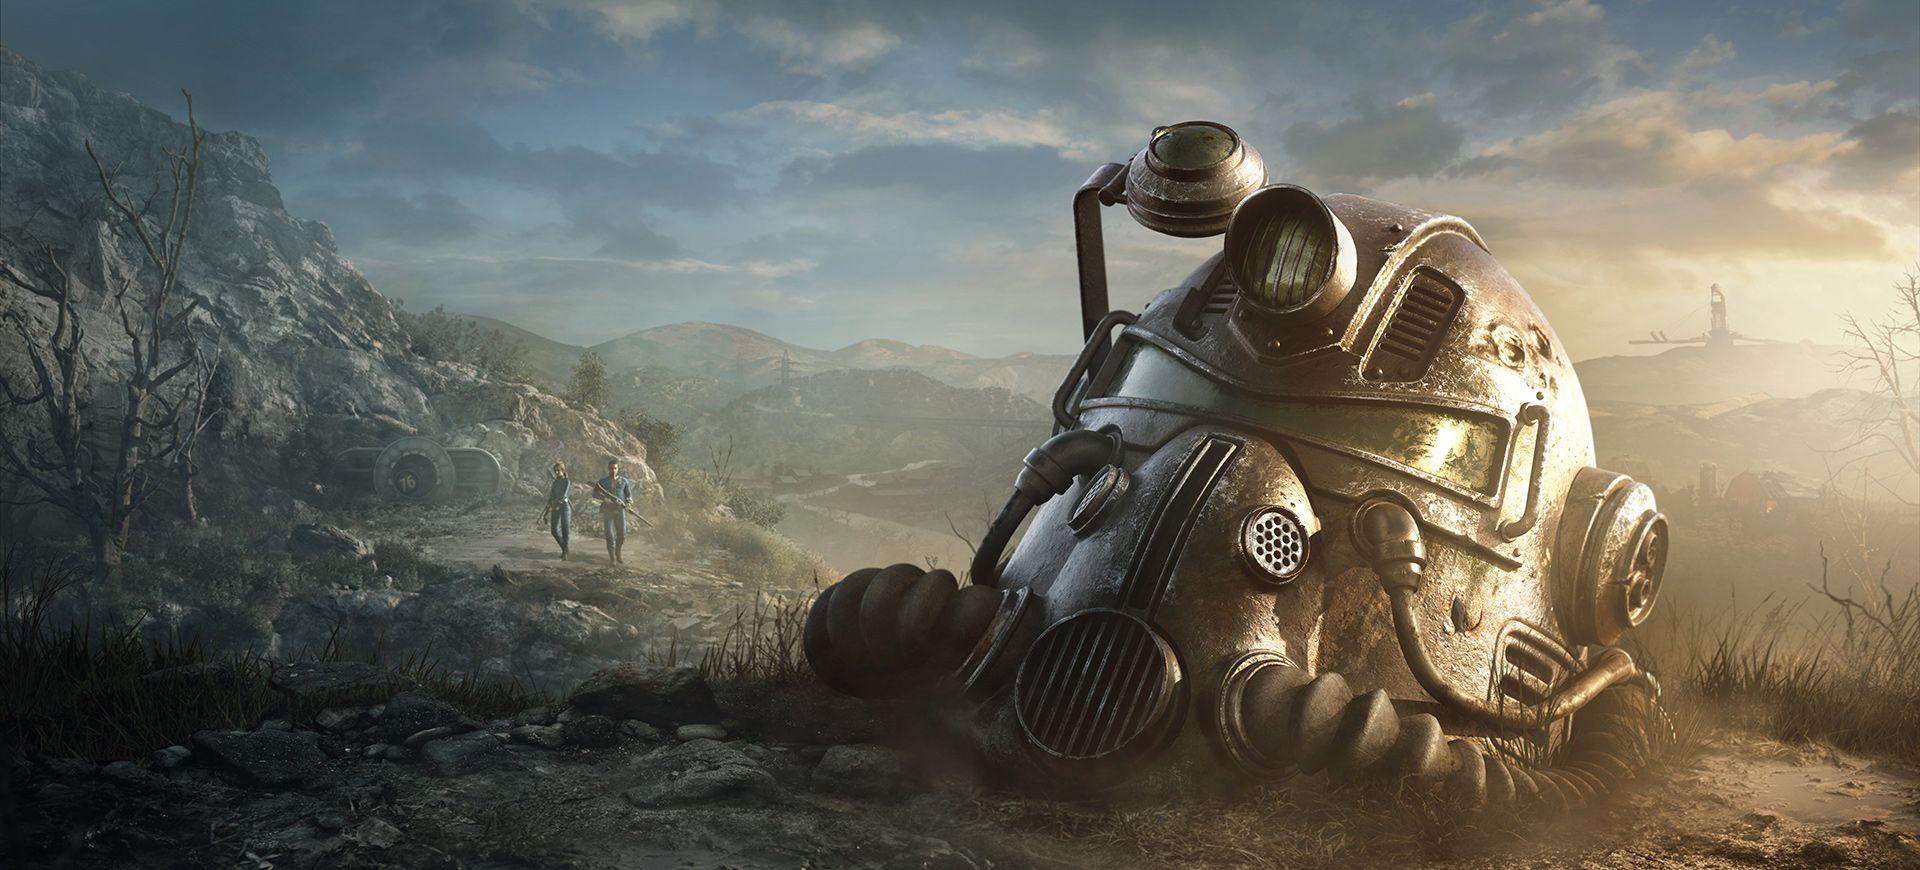 Ist Fallout 76 ein plattformübergreifendes Spiel und unterstützt es Cross-Play?